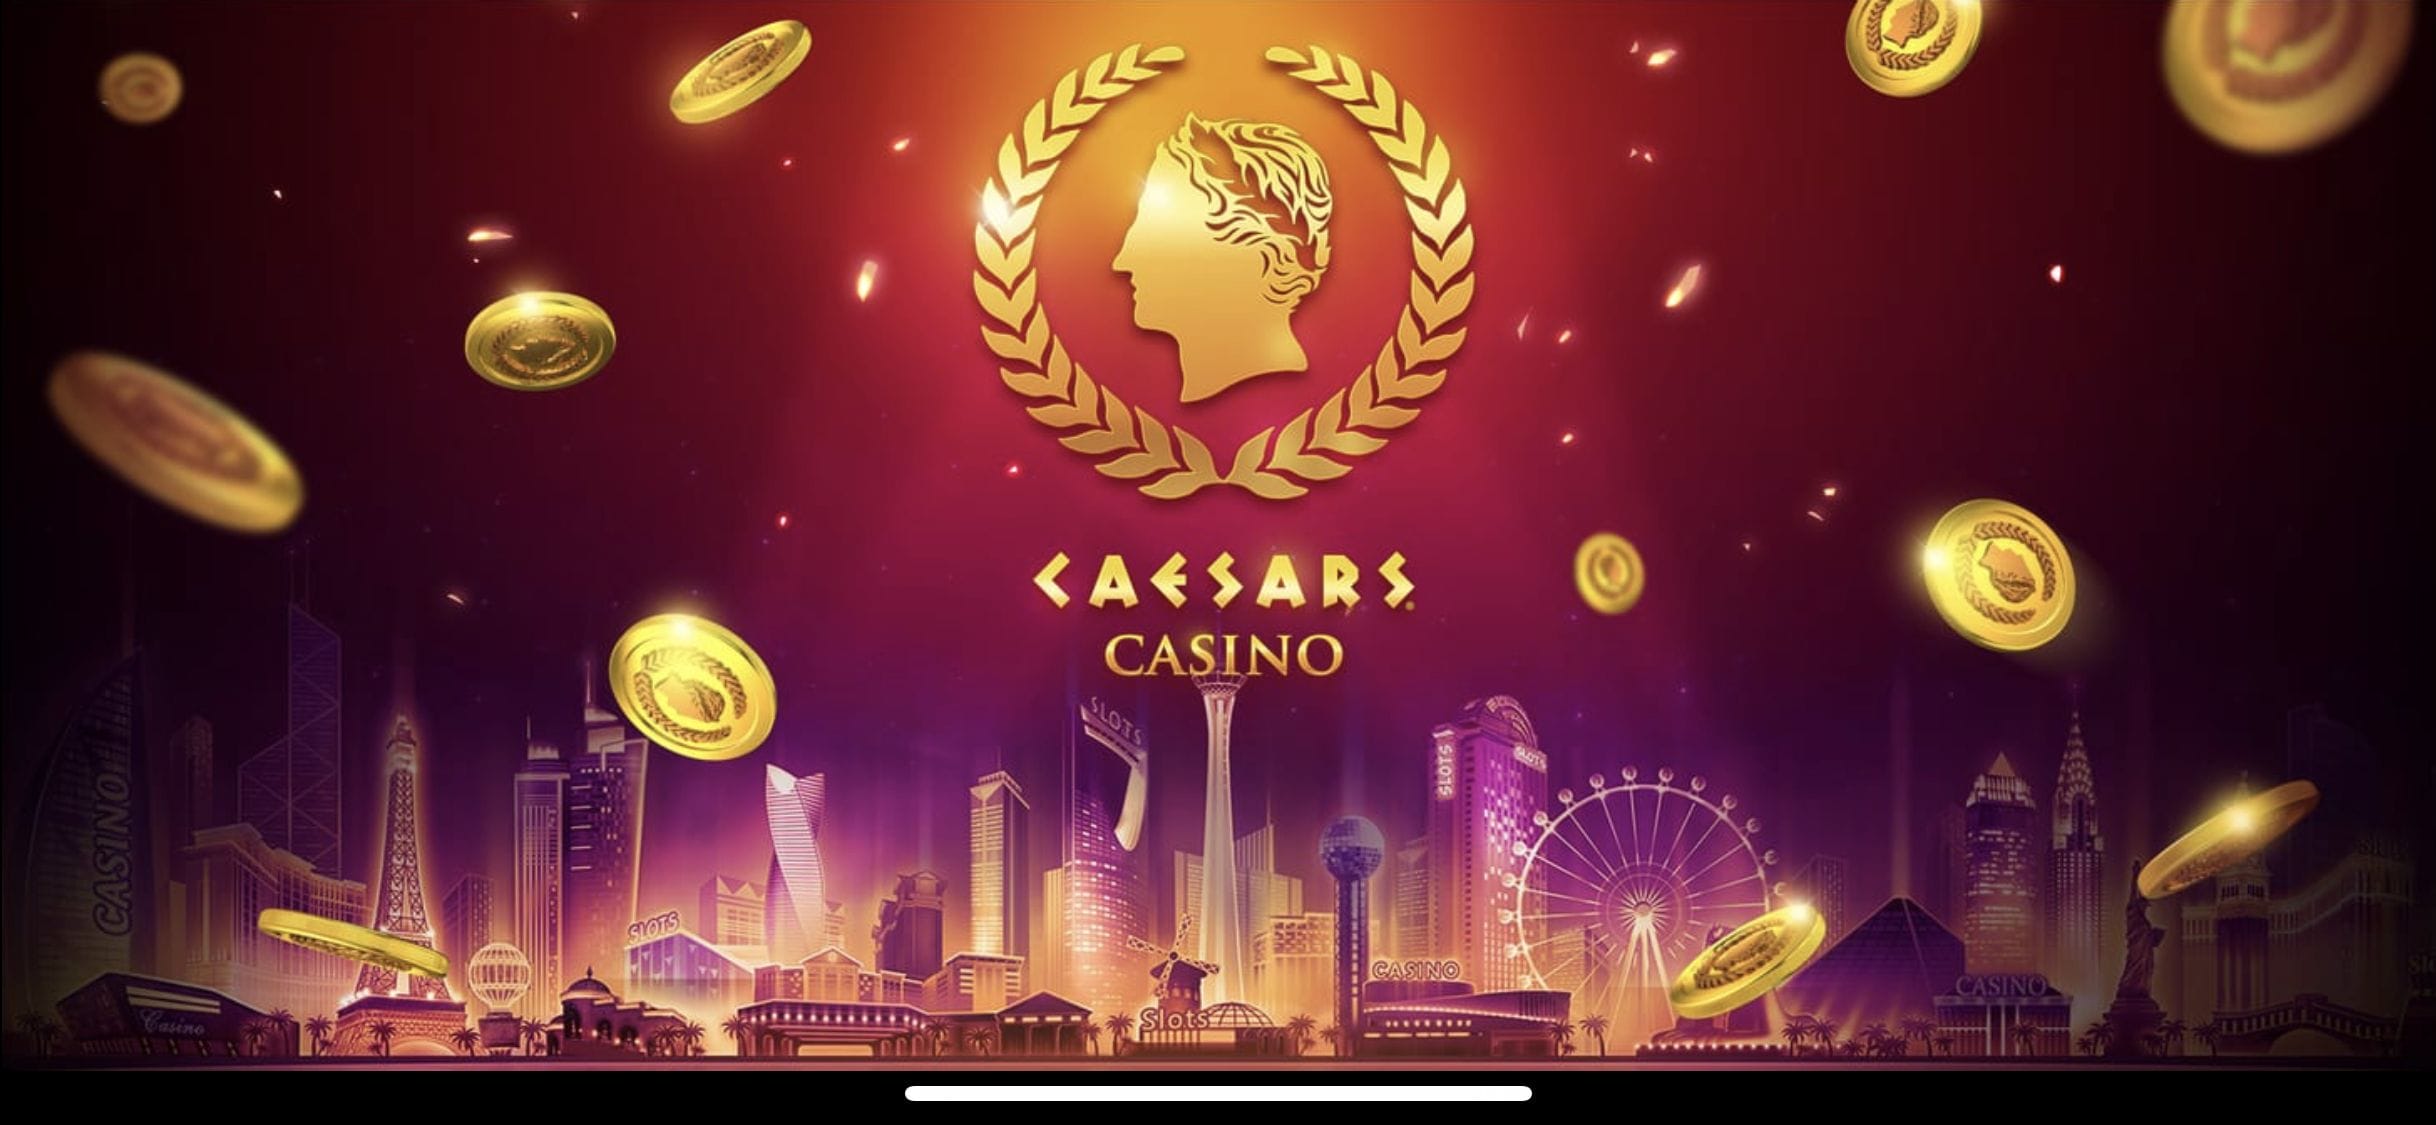 caesars casino app bonus code